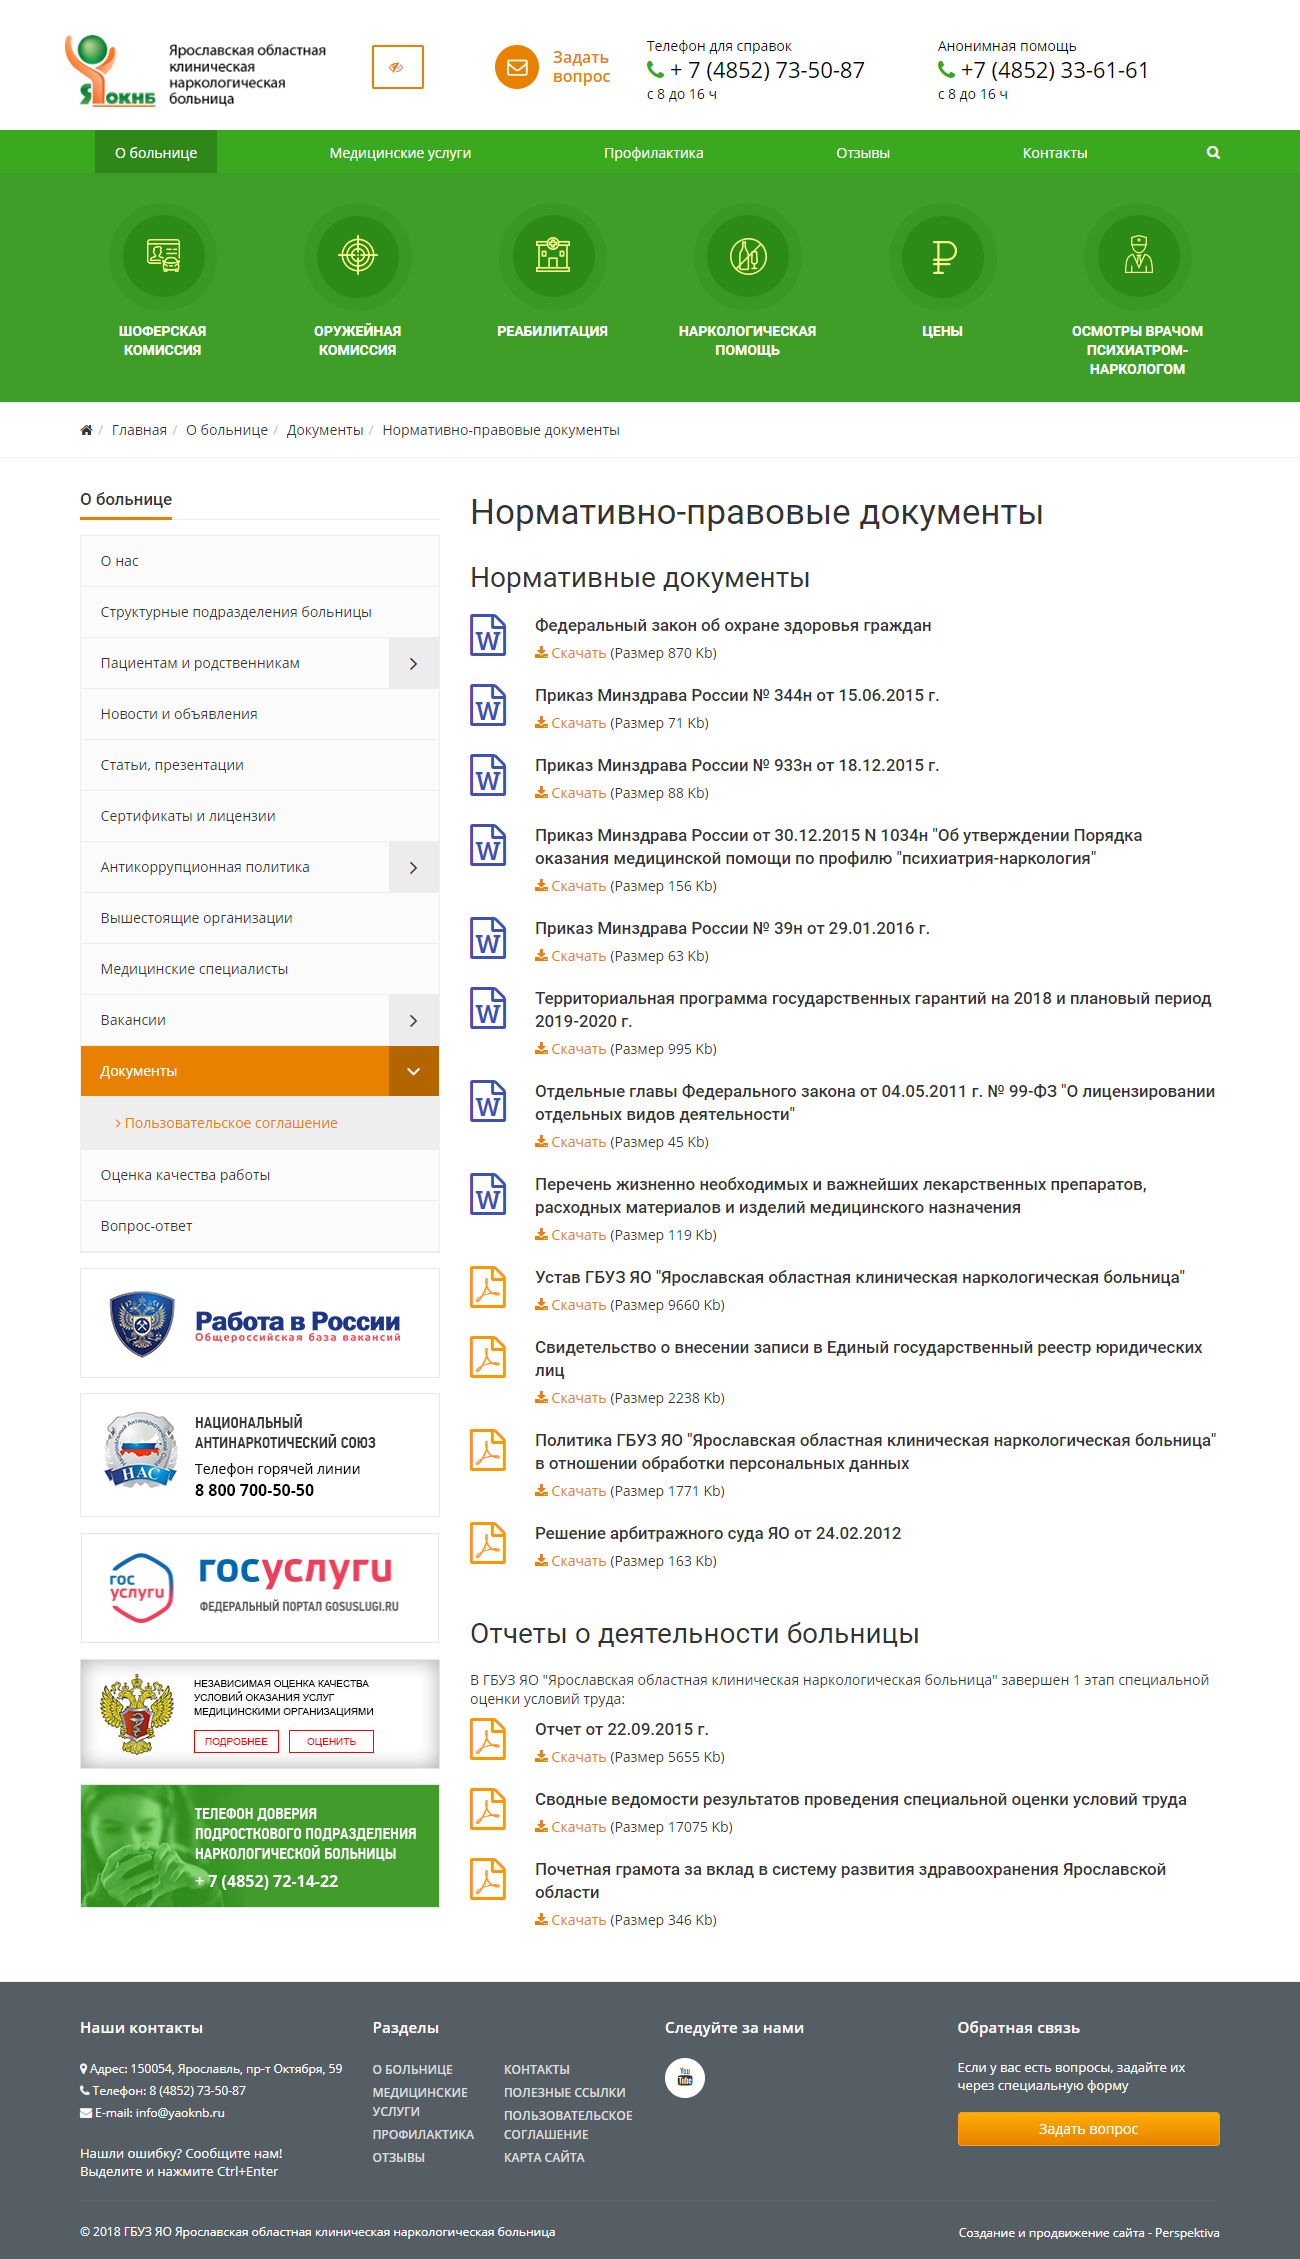 сайт ярославской областной клинической наркологической больницы